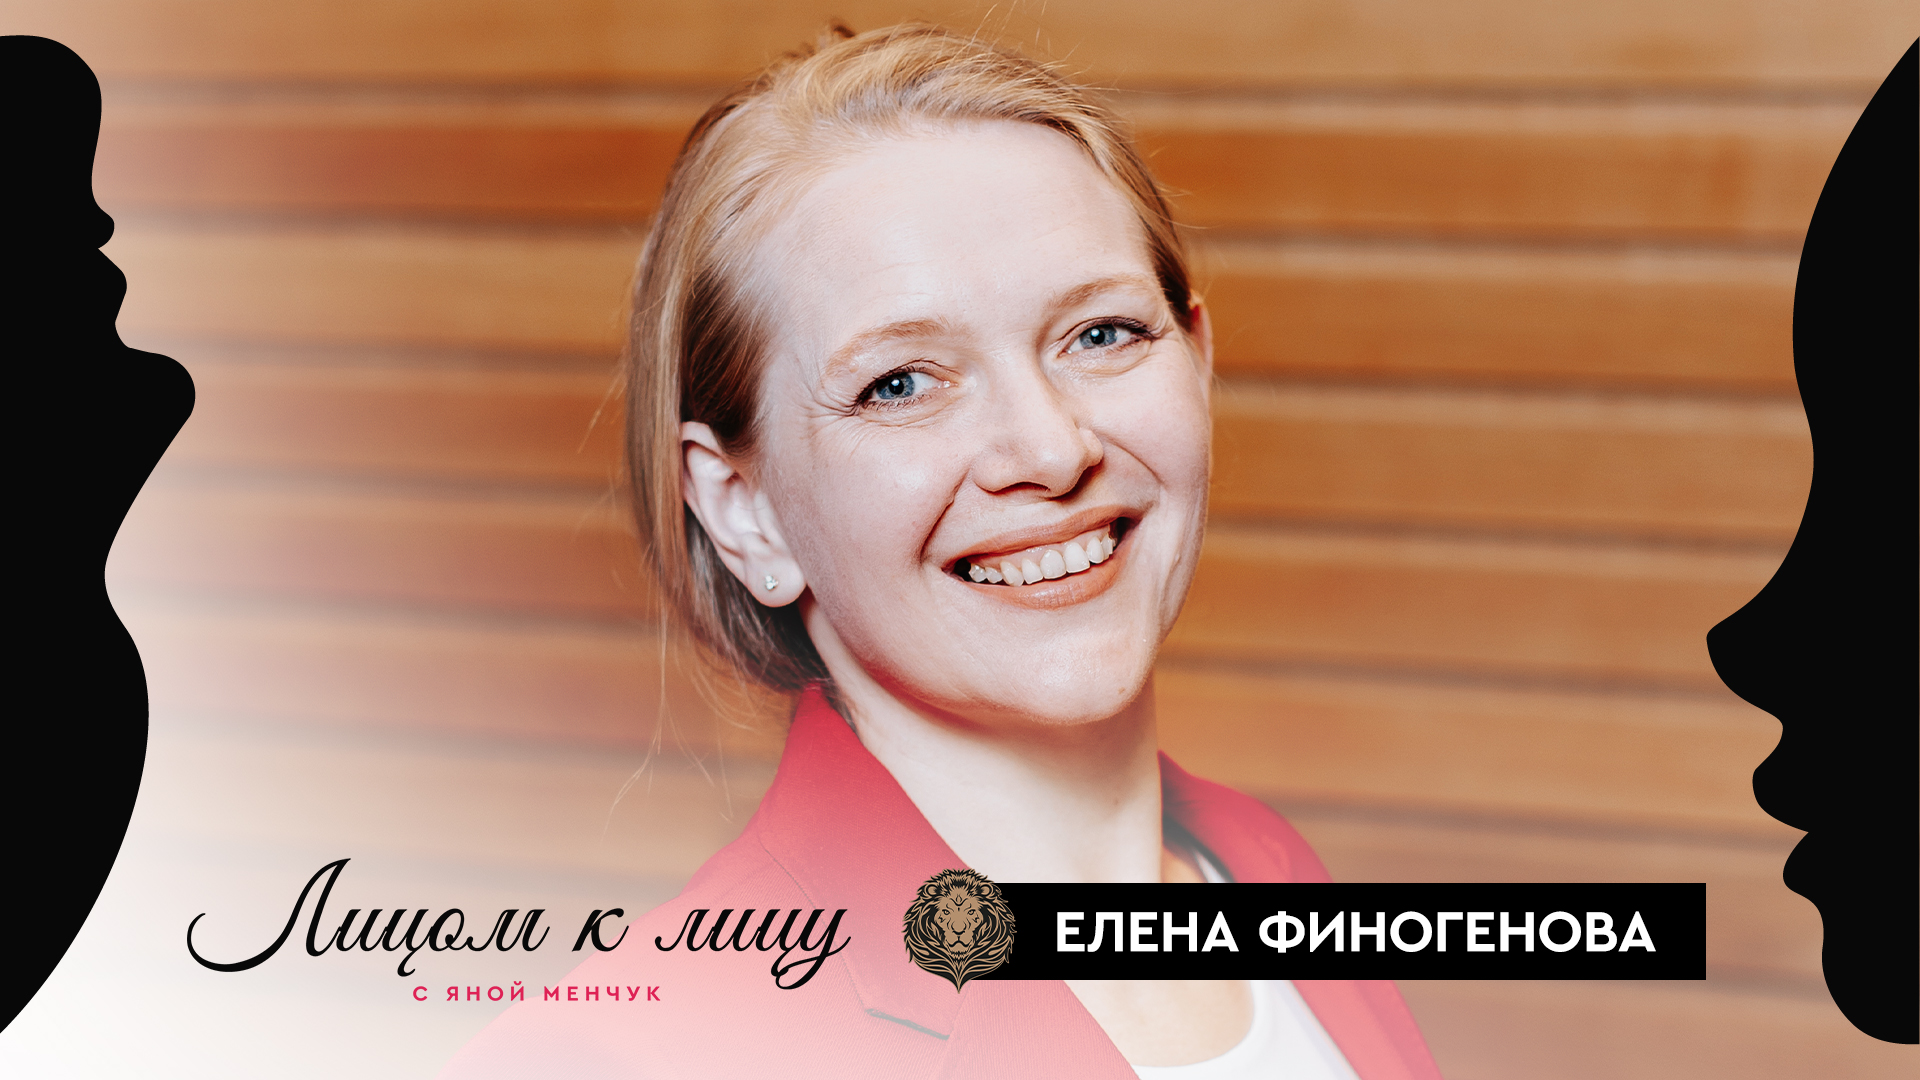 Елена Финогенова: Мне чем сложнее, тем лучше — Лицом к лицу